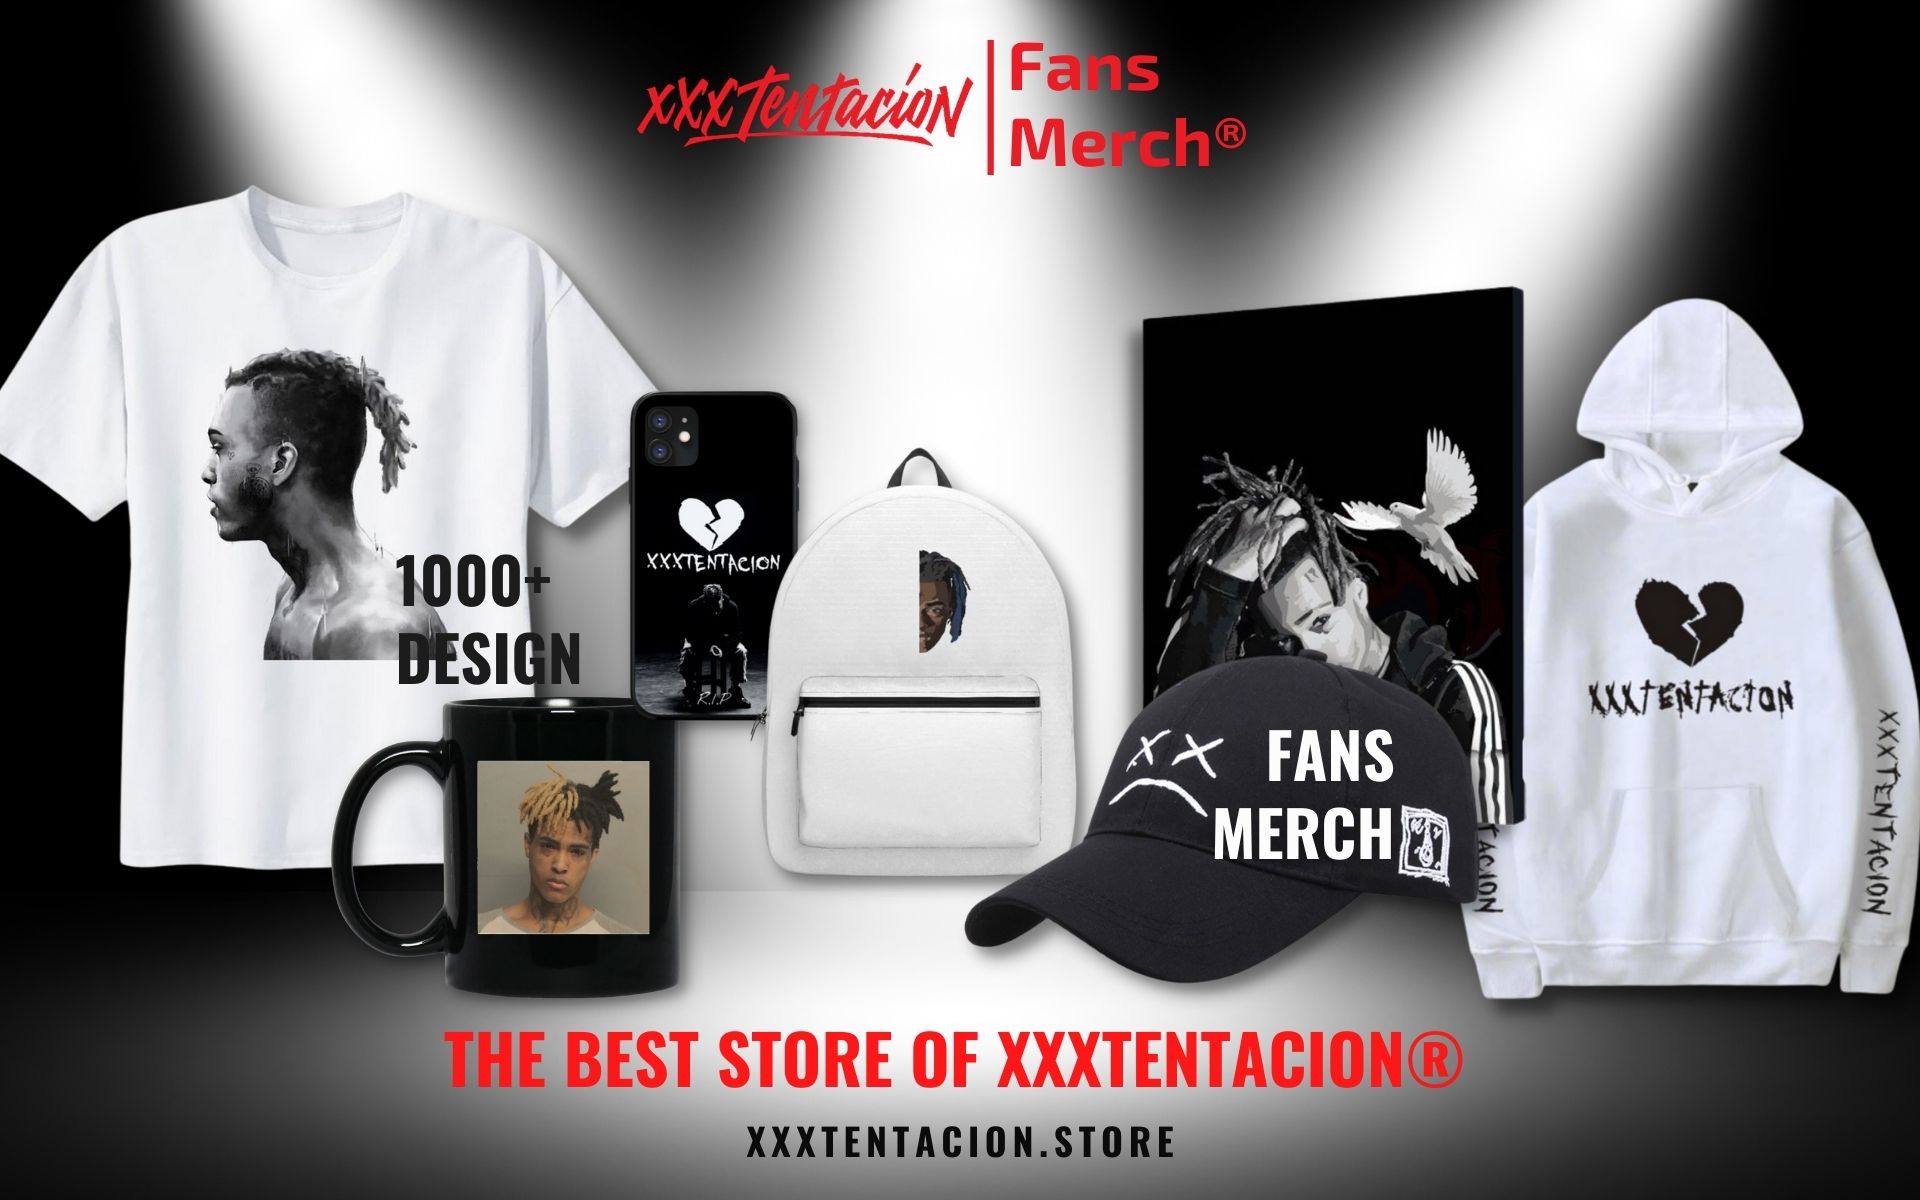 Xxxtentacion Merch Web Banner - XXXtentacion Shop